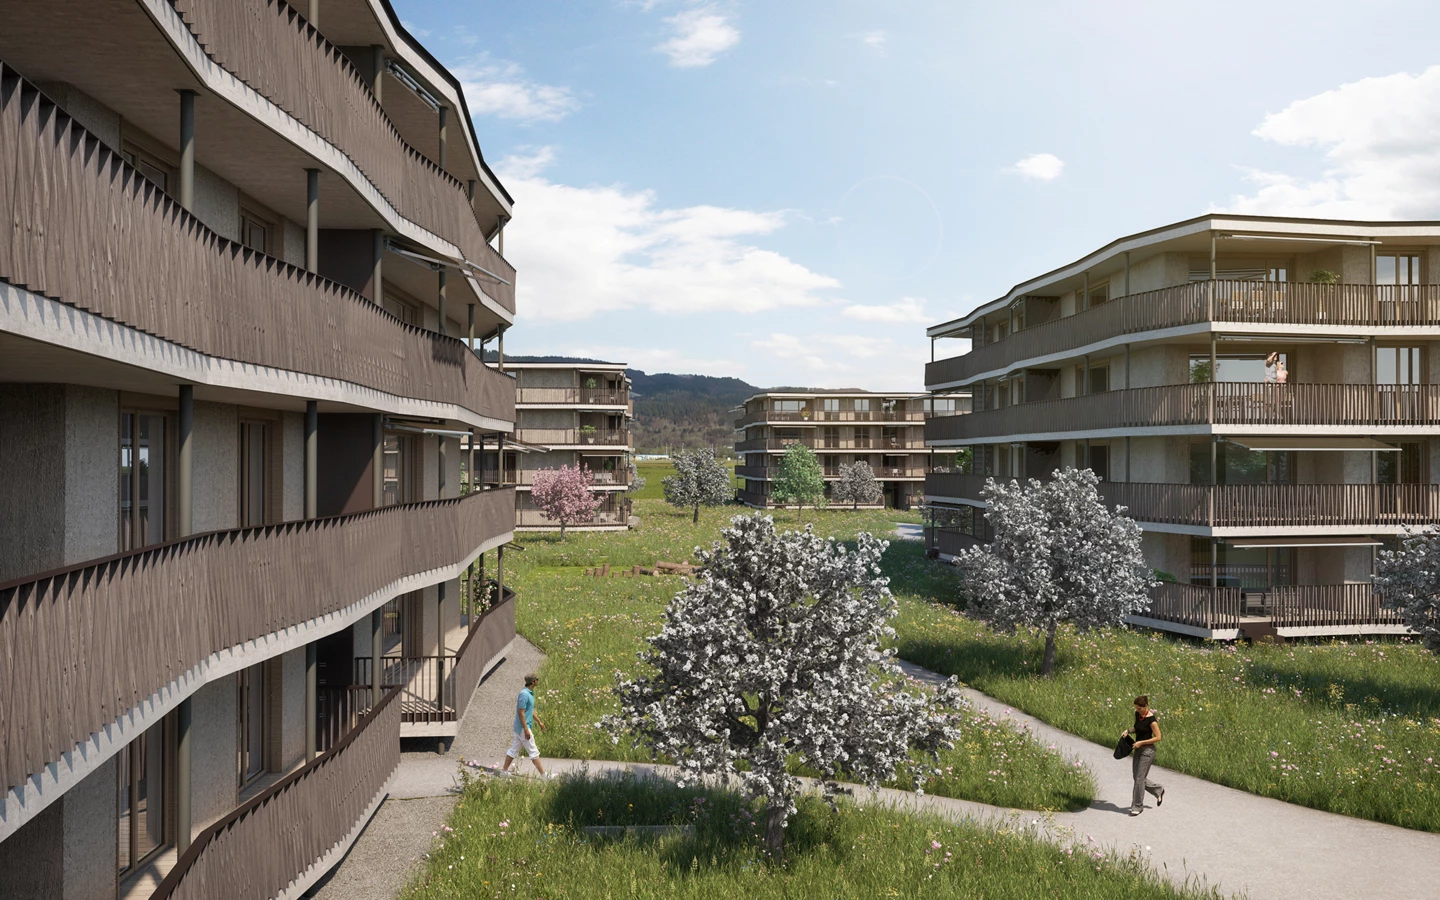 Die neue Wohnüberbauung "Neumatt Park" in Stein, Kanton St. Gallen. (Bildnachweis: Fortimo Invest, St. Gallen)